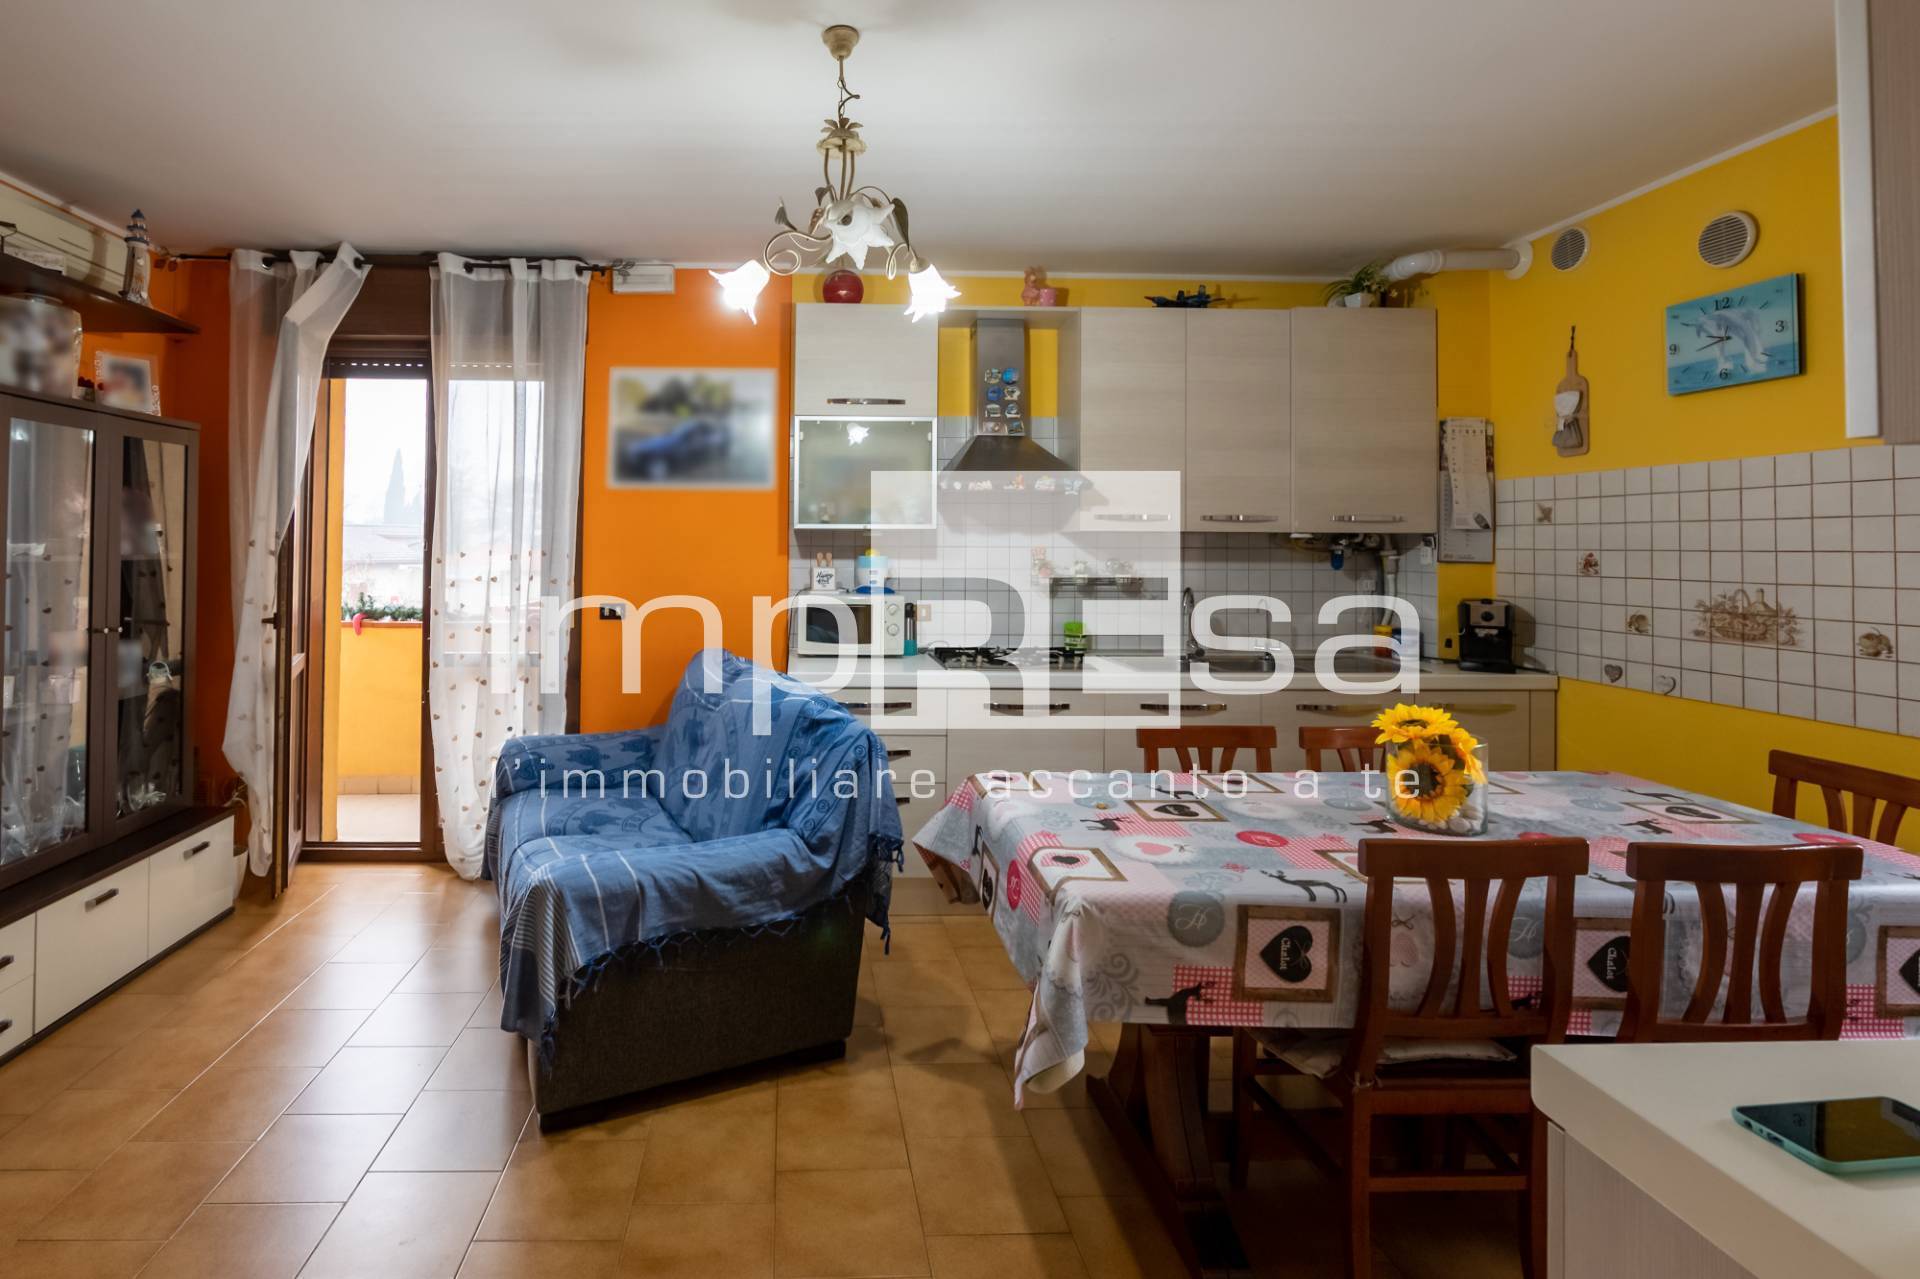 Appartamento in vendita a San Biagio di Callalta, 4 locali, zona Località: Fagar?, prezzo € 105.000 | PortaleAgenzieImmobiliari.it